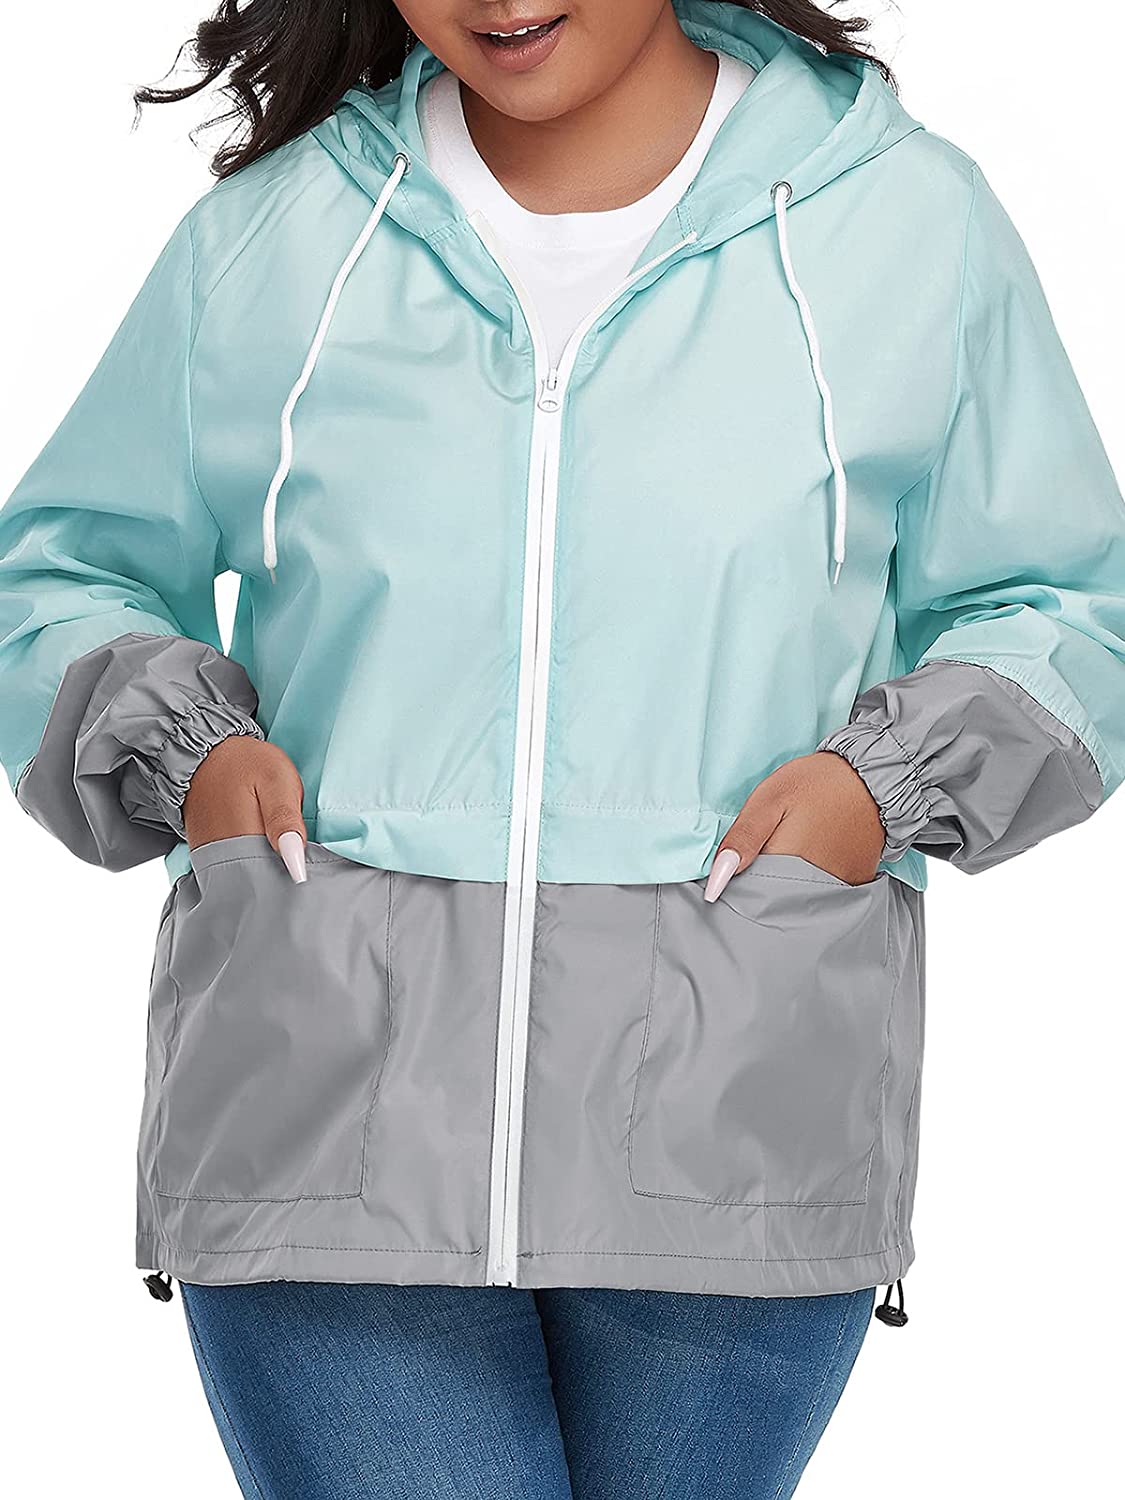 Star Plus Size Rain for Women Windbreaker Jacket Wome | eBay